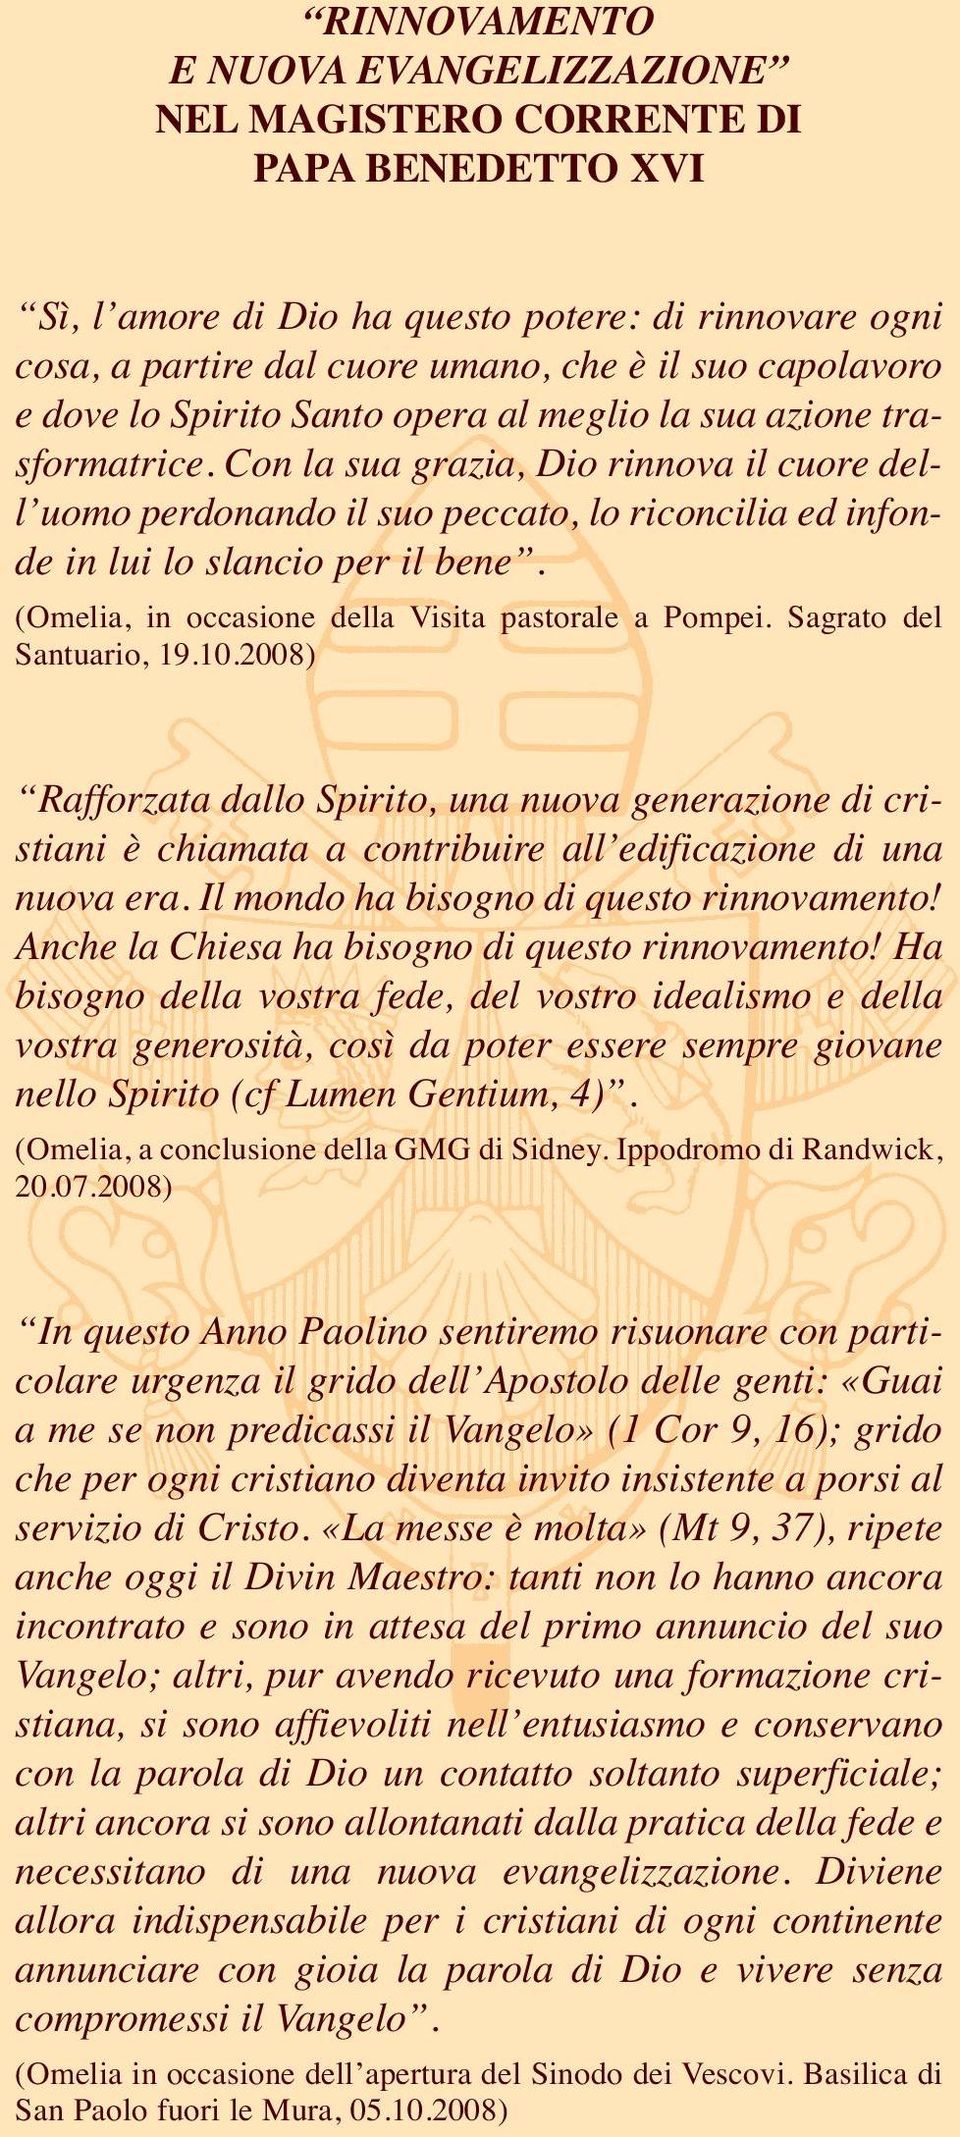 (Omelia, in occasione della Visita pastorale a Pompei. Sagrato del Santuario, 19.10.